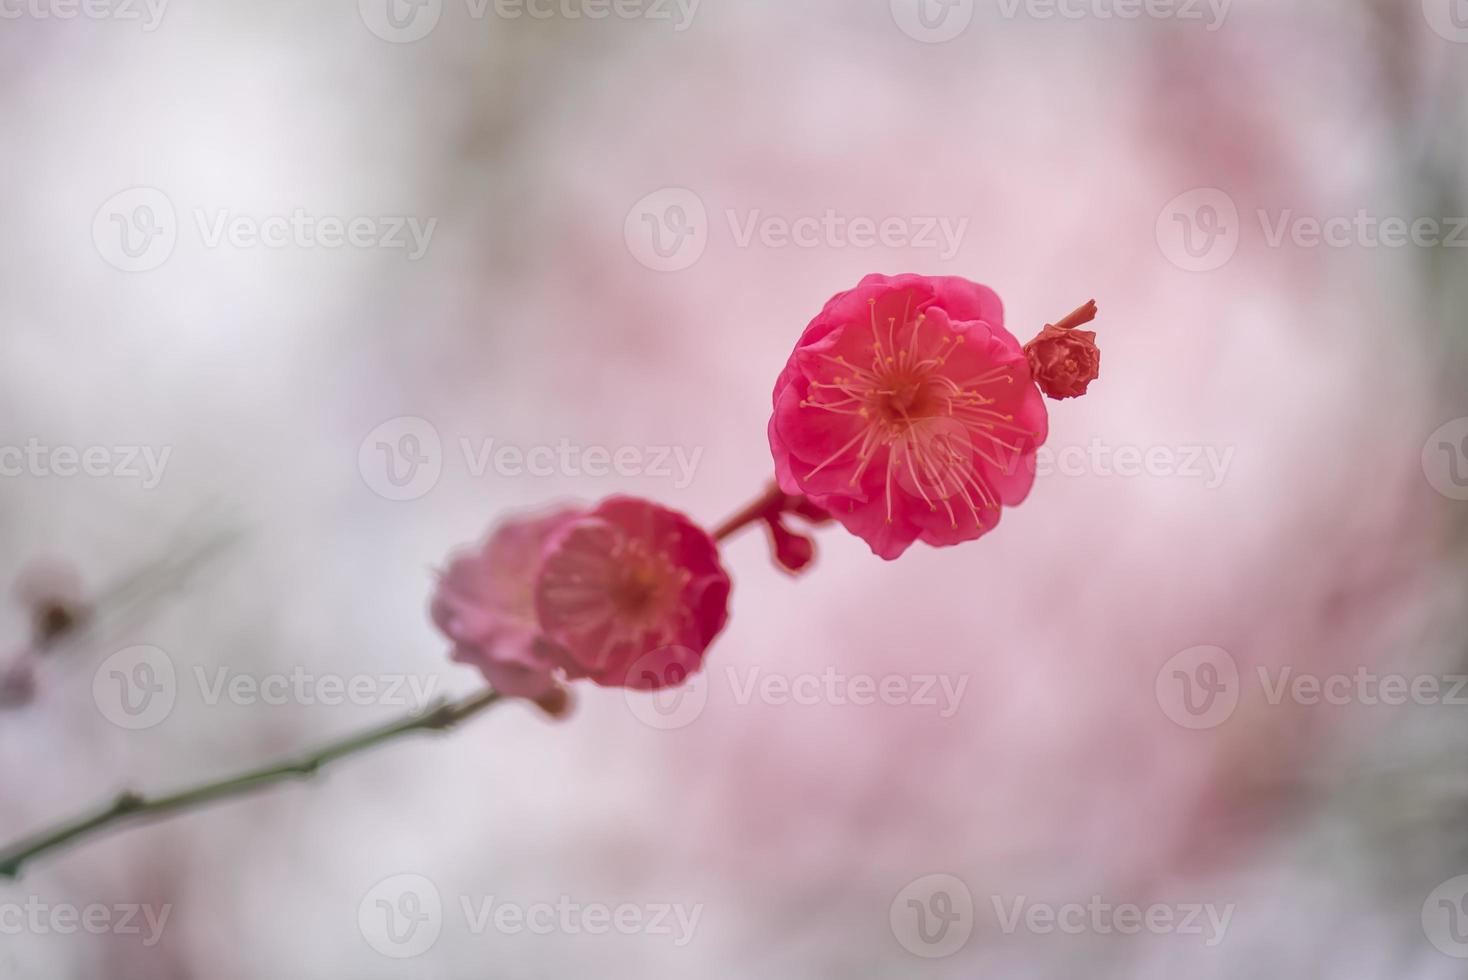 närbild av en rosa plommonblomma foto